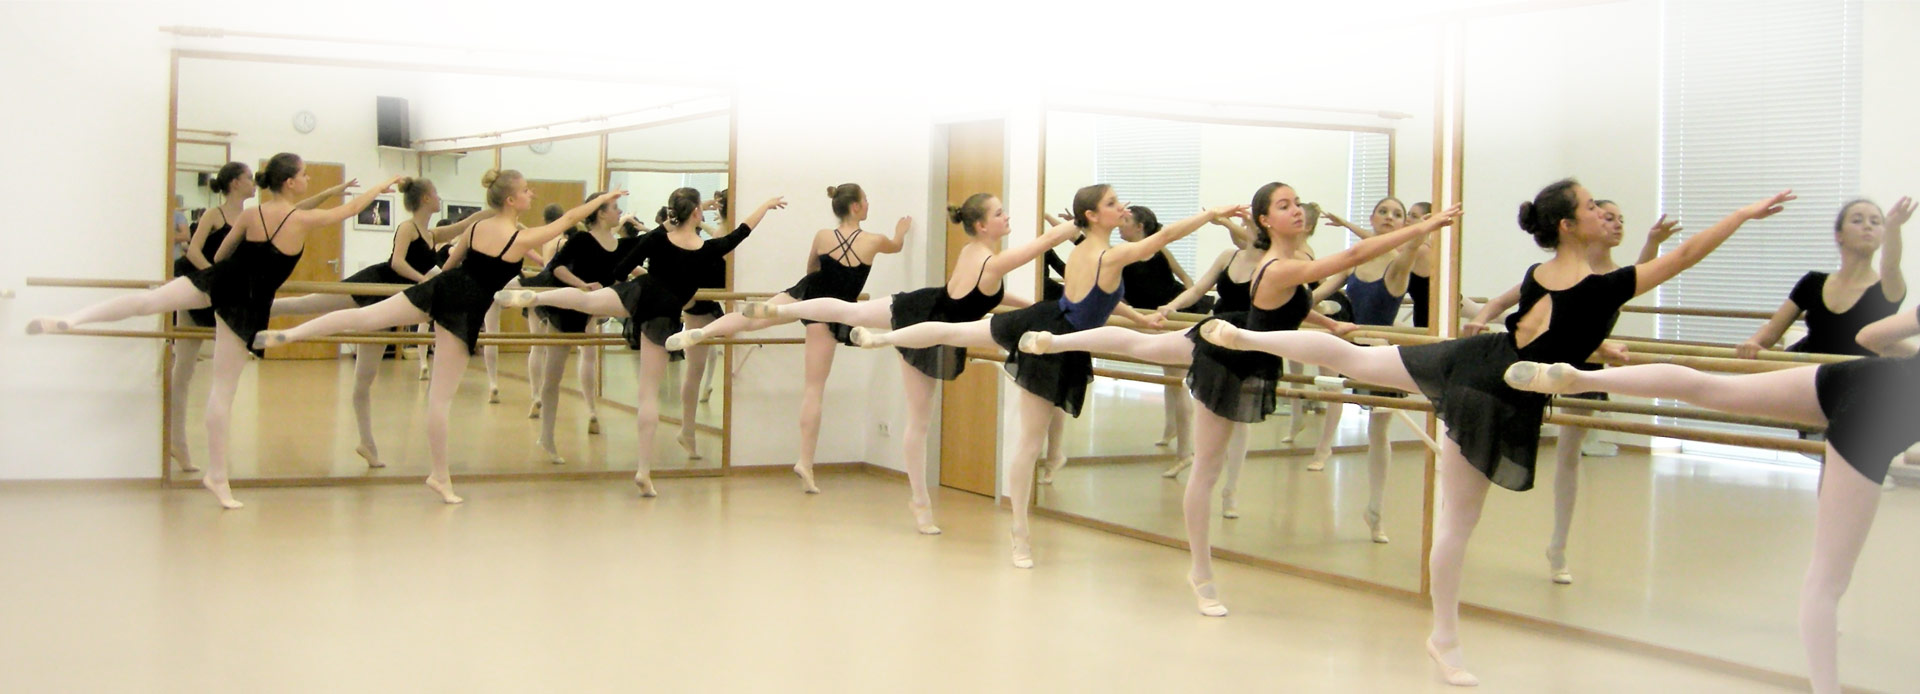 Die Ballettschule Baden-Baden bietet professionellen Ballettunterricht für jede Altersstufe